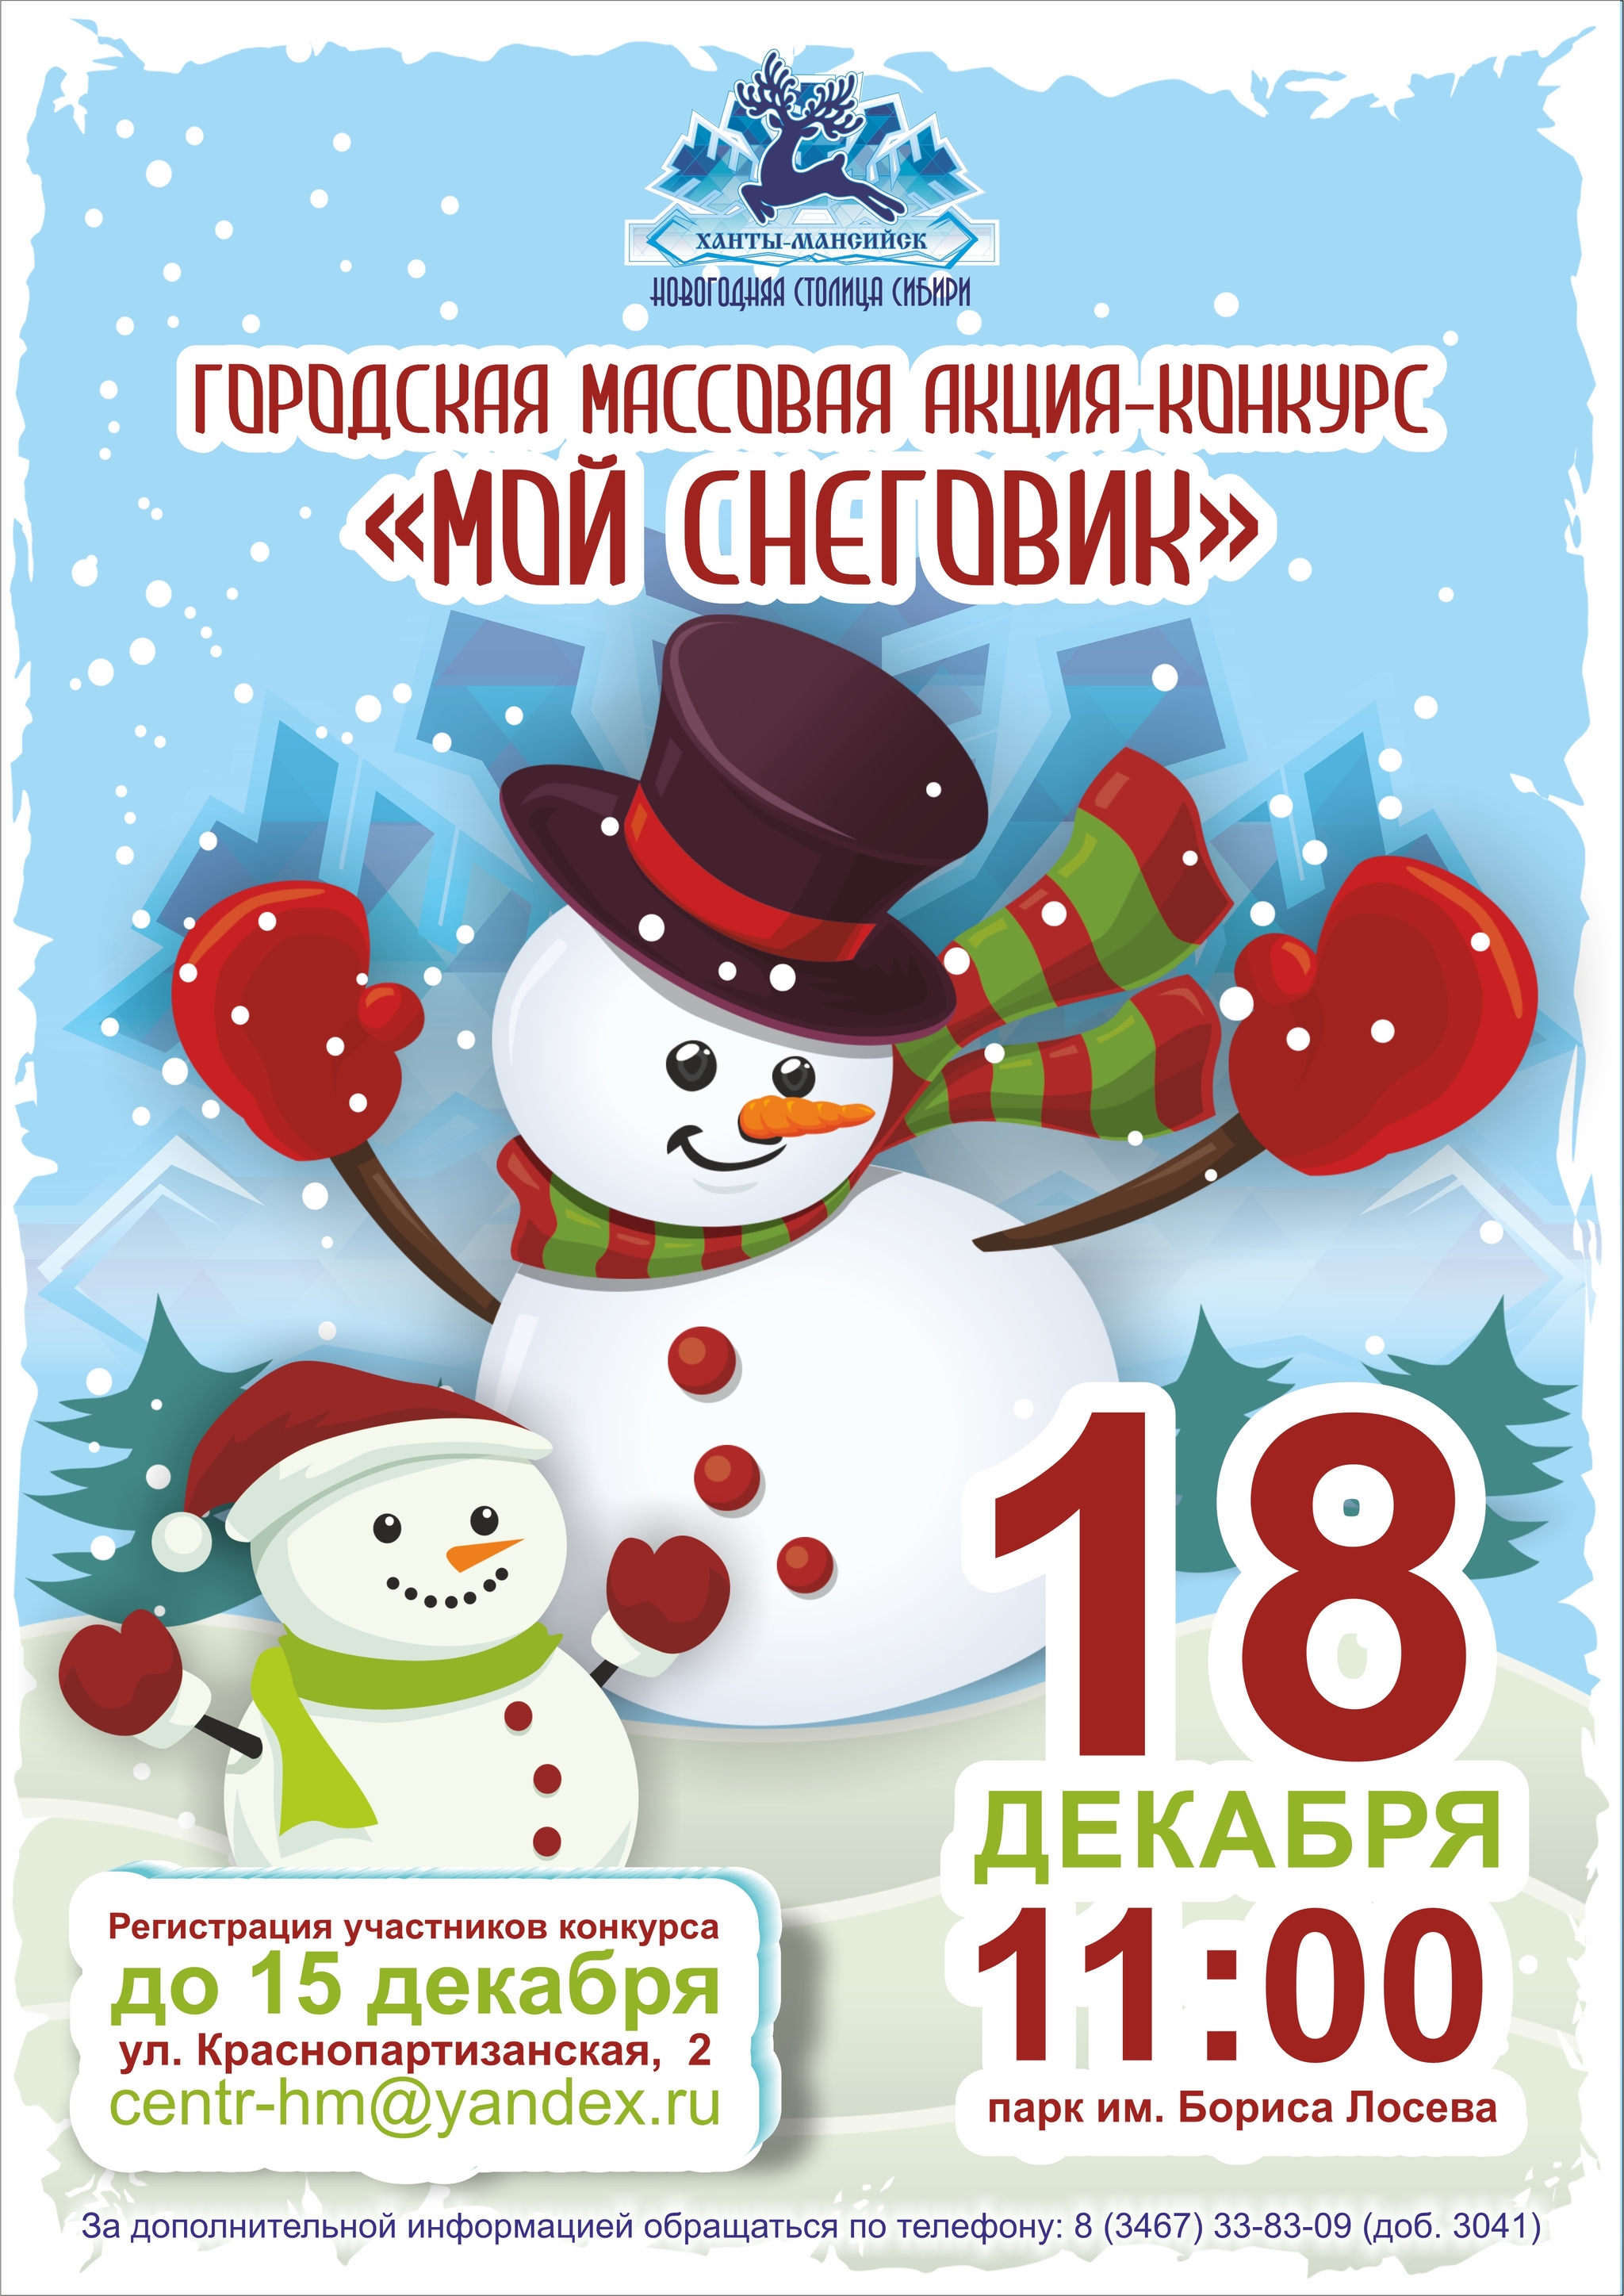 Жители Ханты-Мансийска посоревнуются за звание лучшего снежного ваятеля 